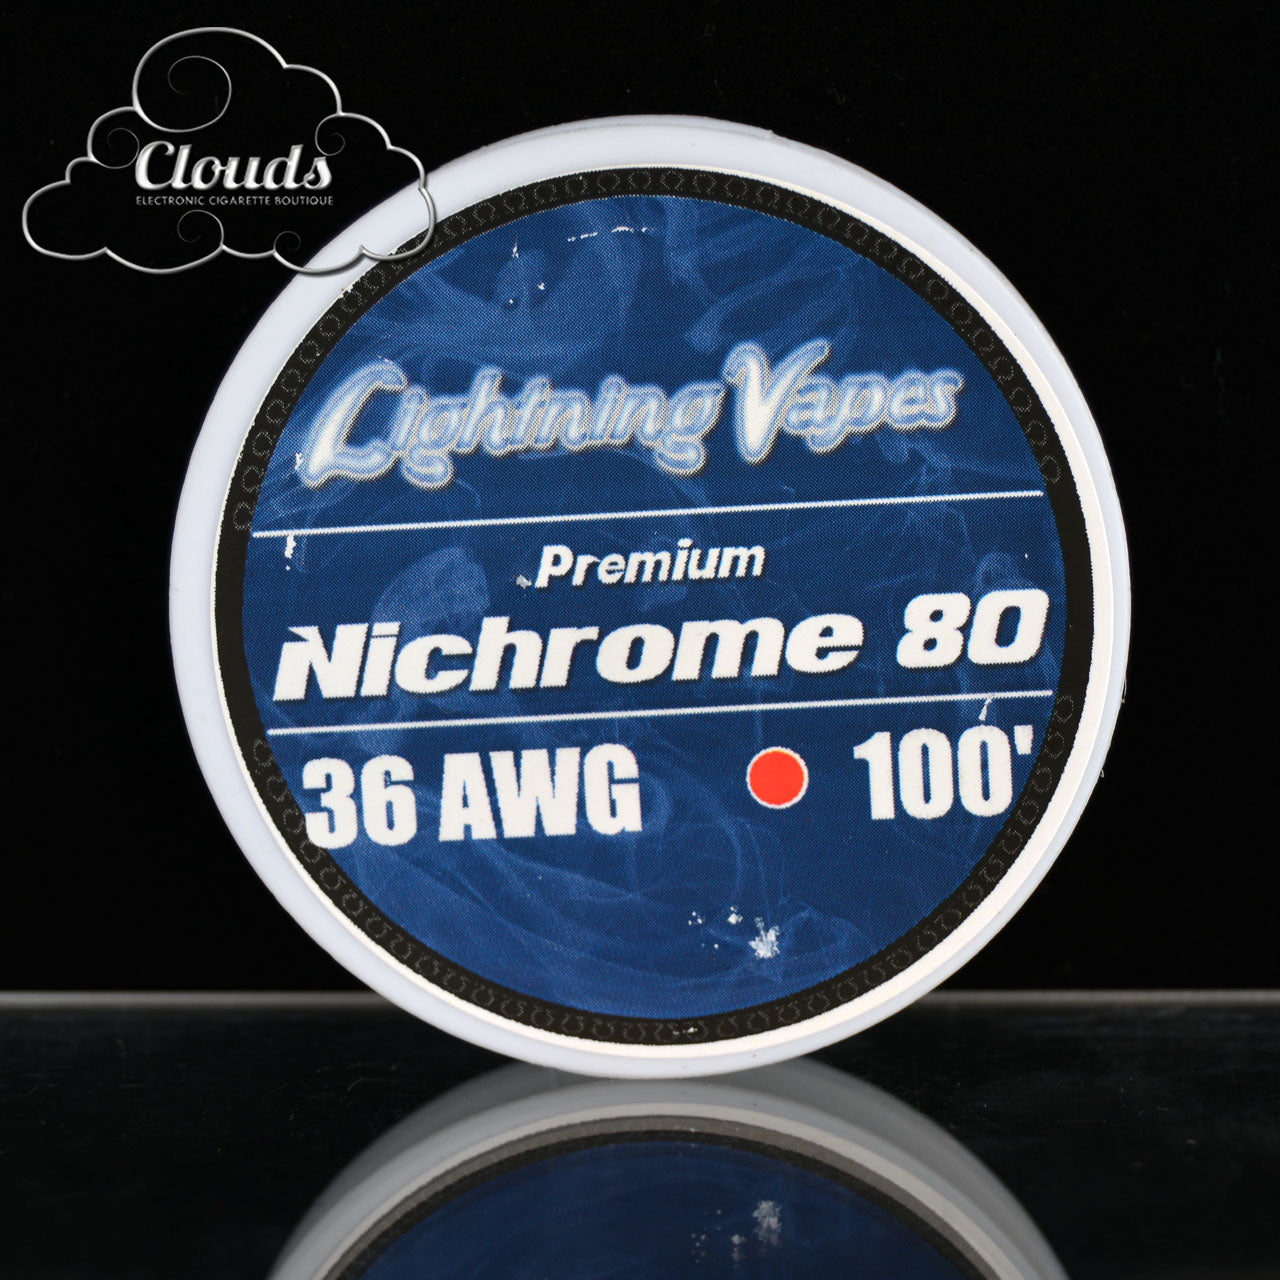 Lightning Vapes 36 AWG Nichrome 80 100ft-250ft